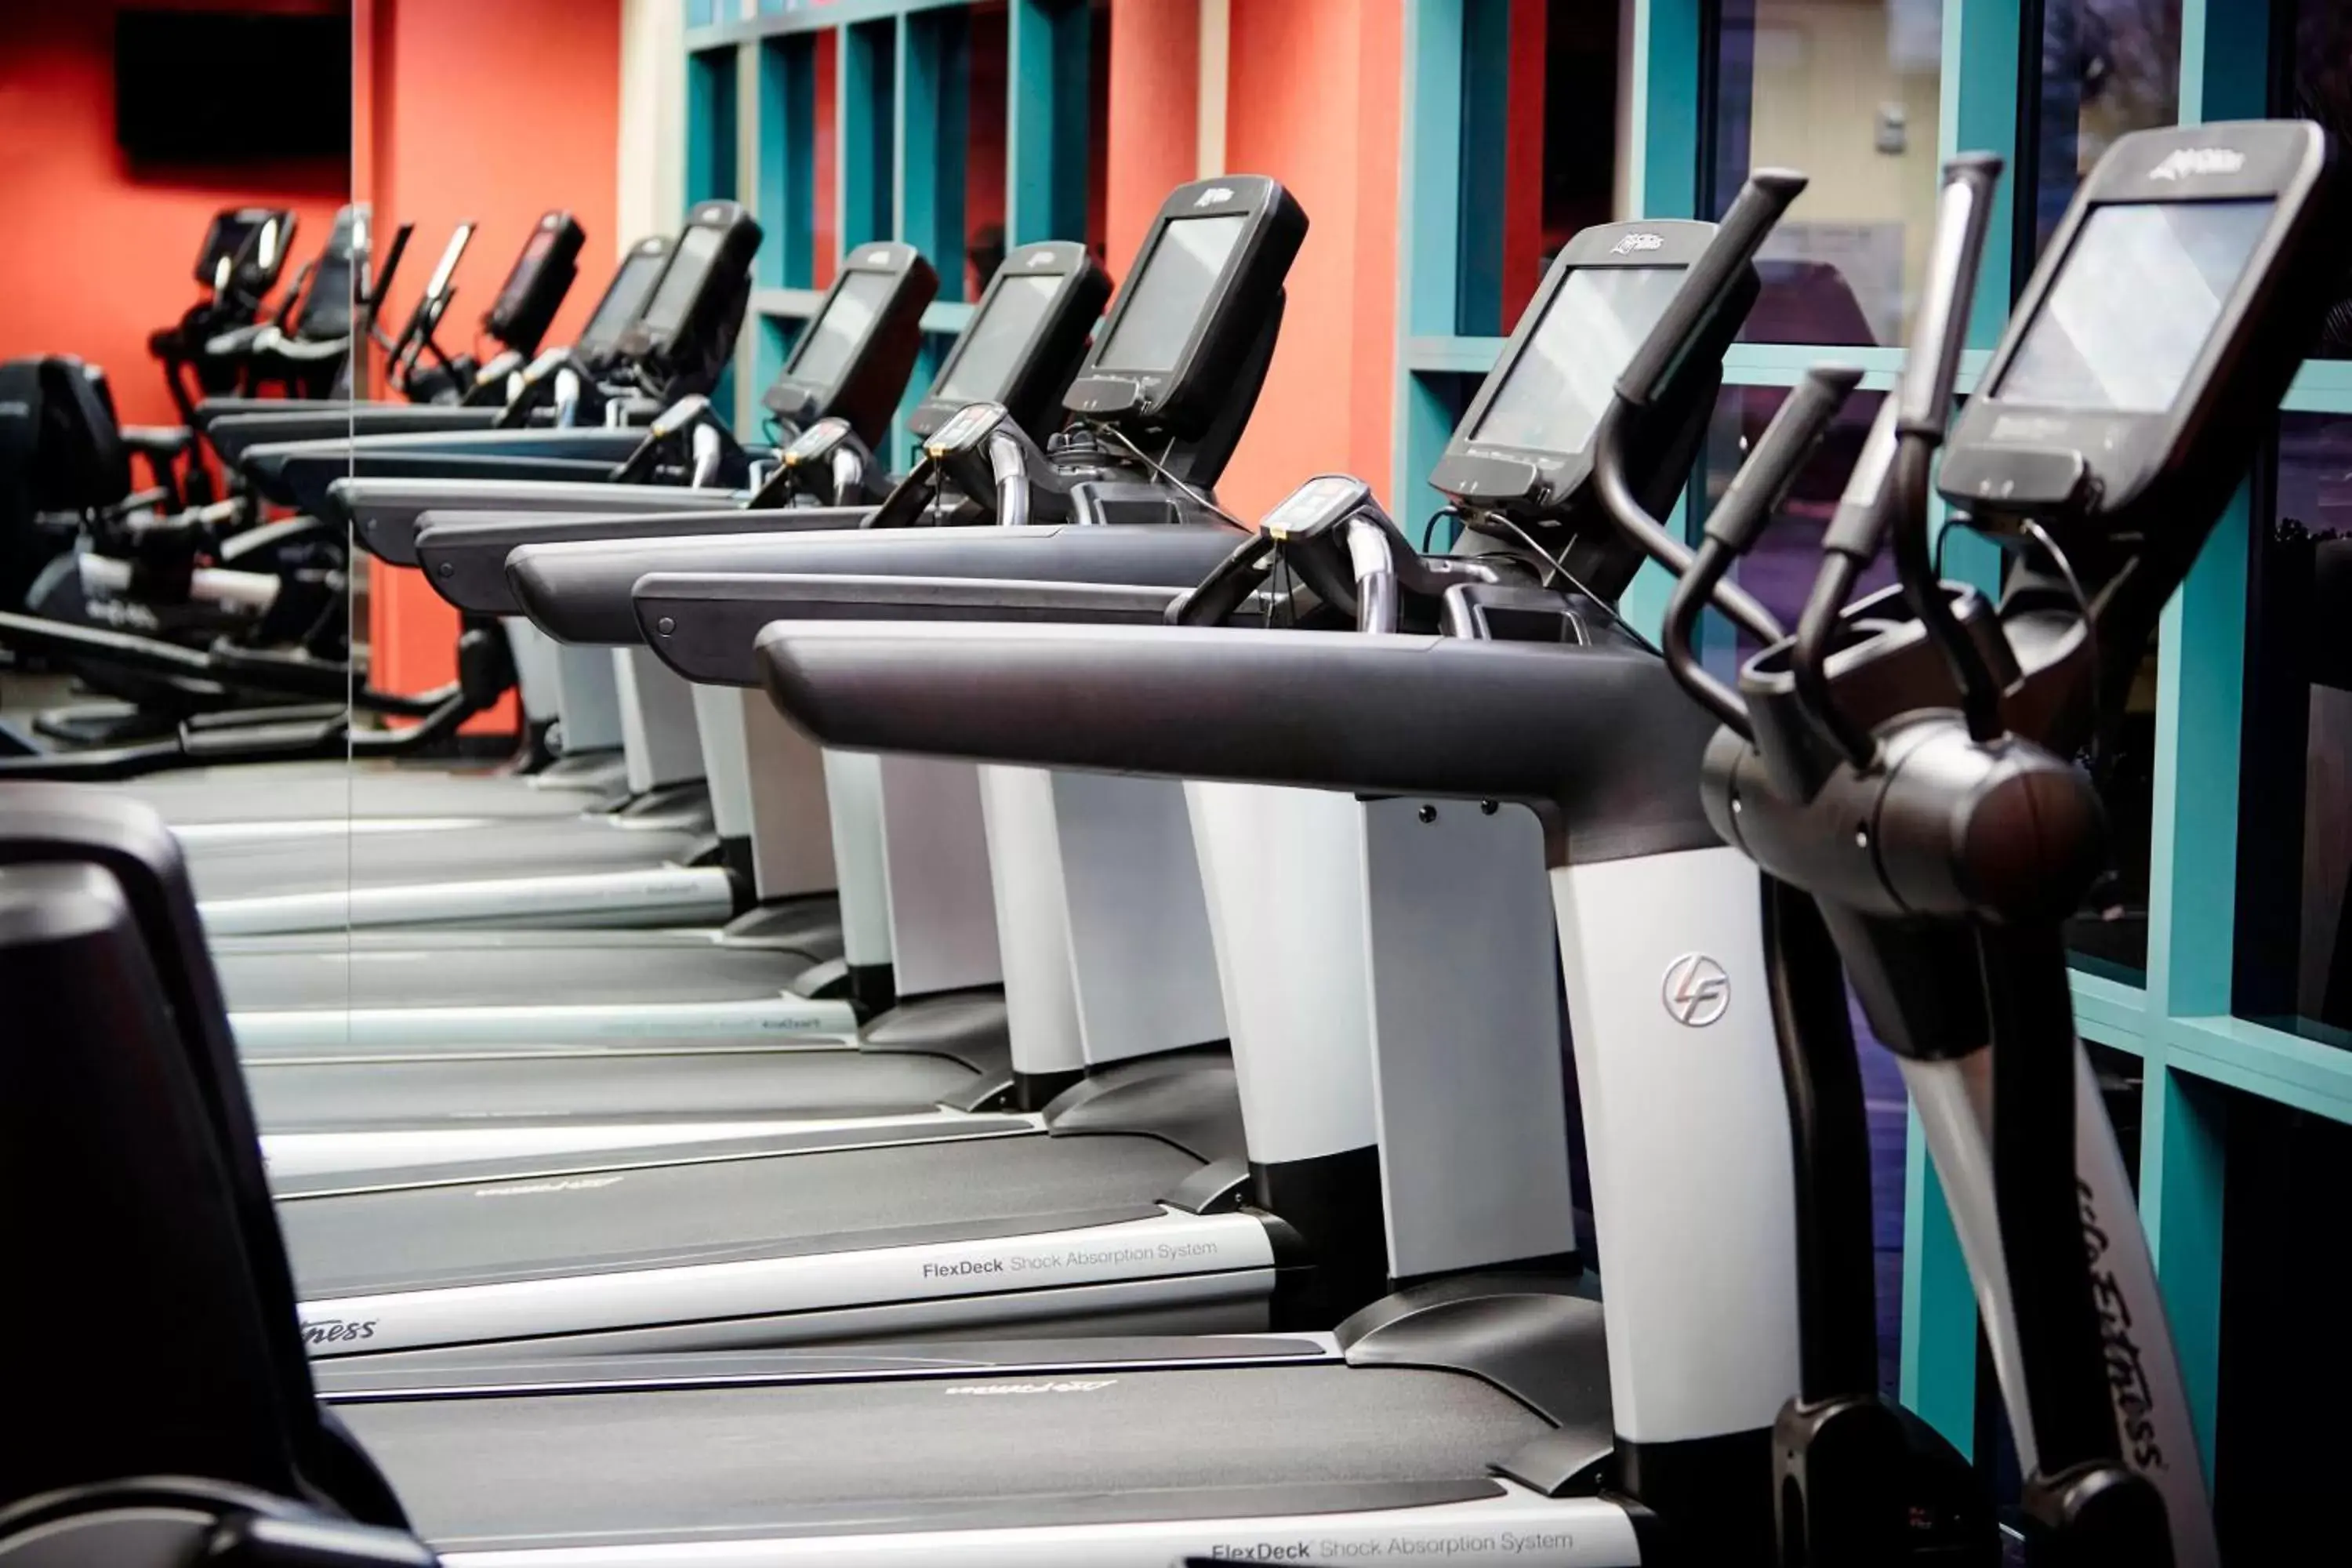 Fitness centre/facilities, Fitness Center/Facilities in Las Vegas Marriott